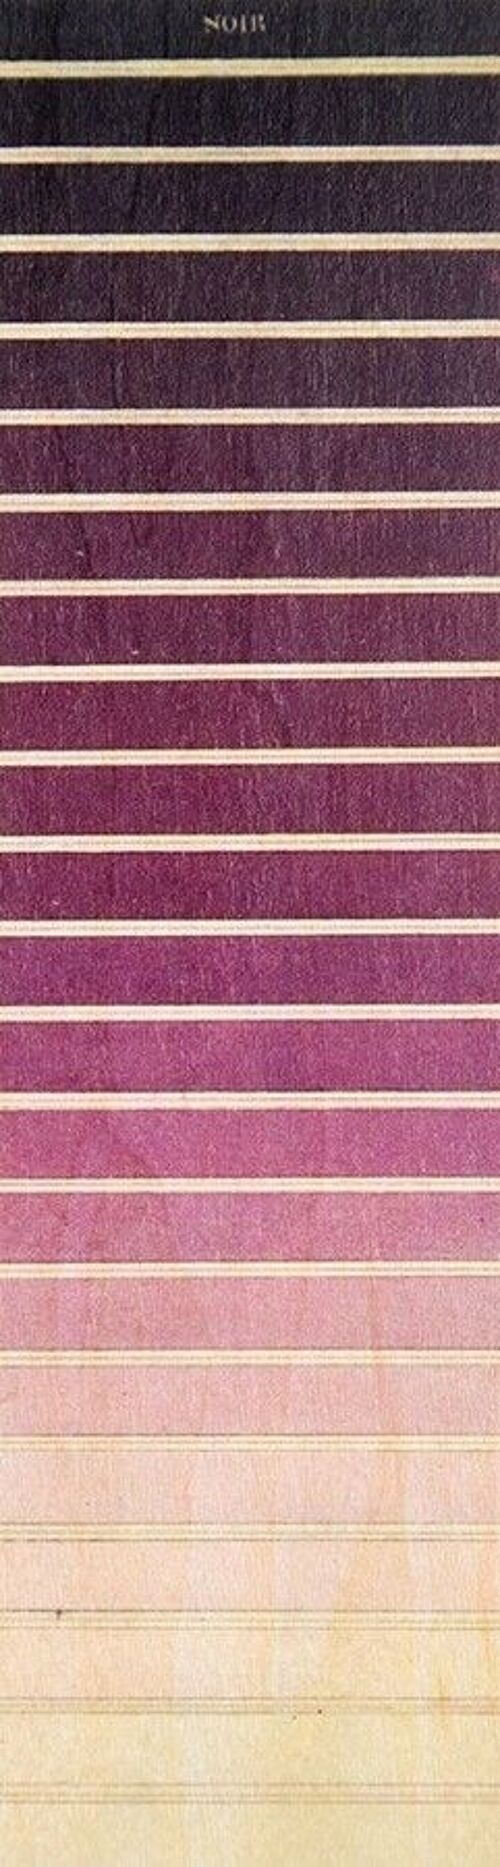 Marque-pages en bois- dégradé couleurs violet